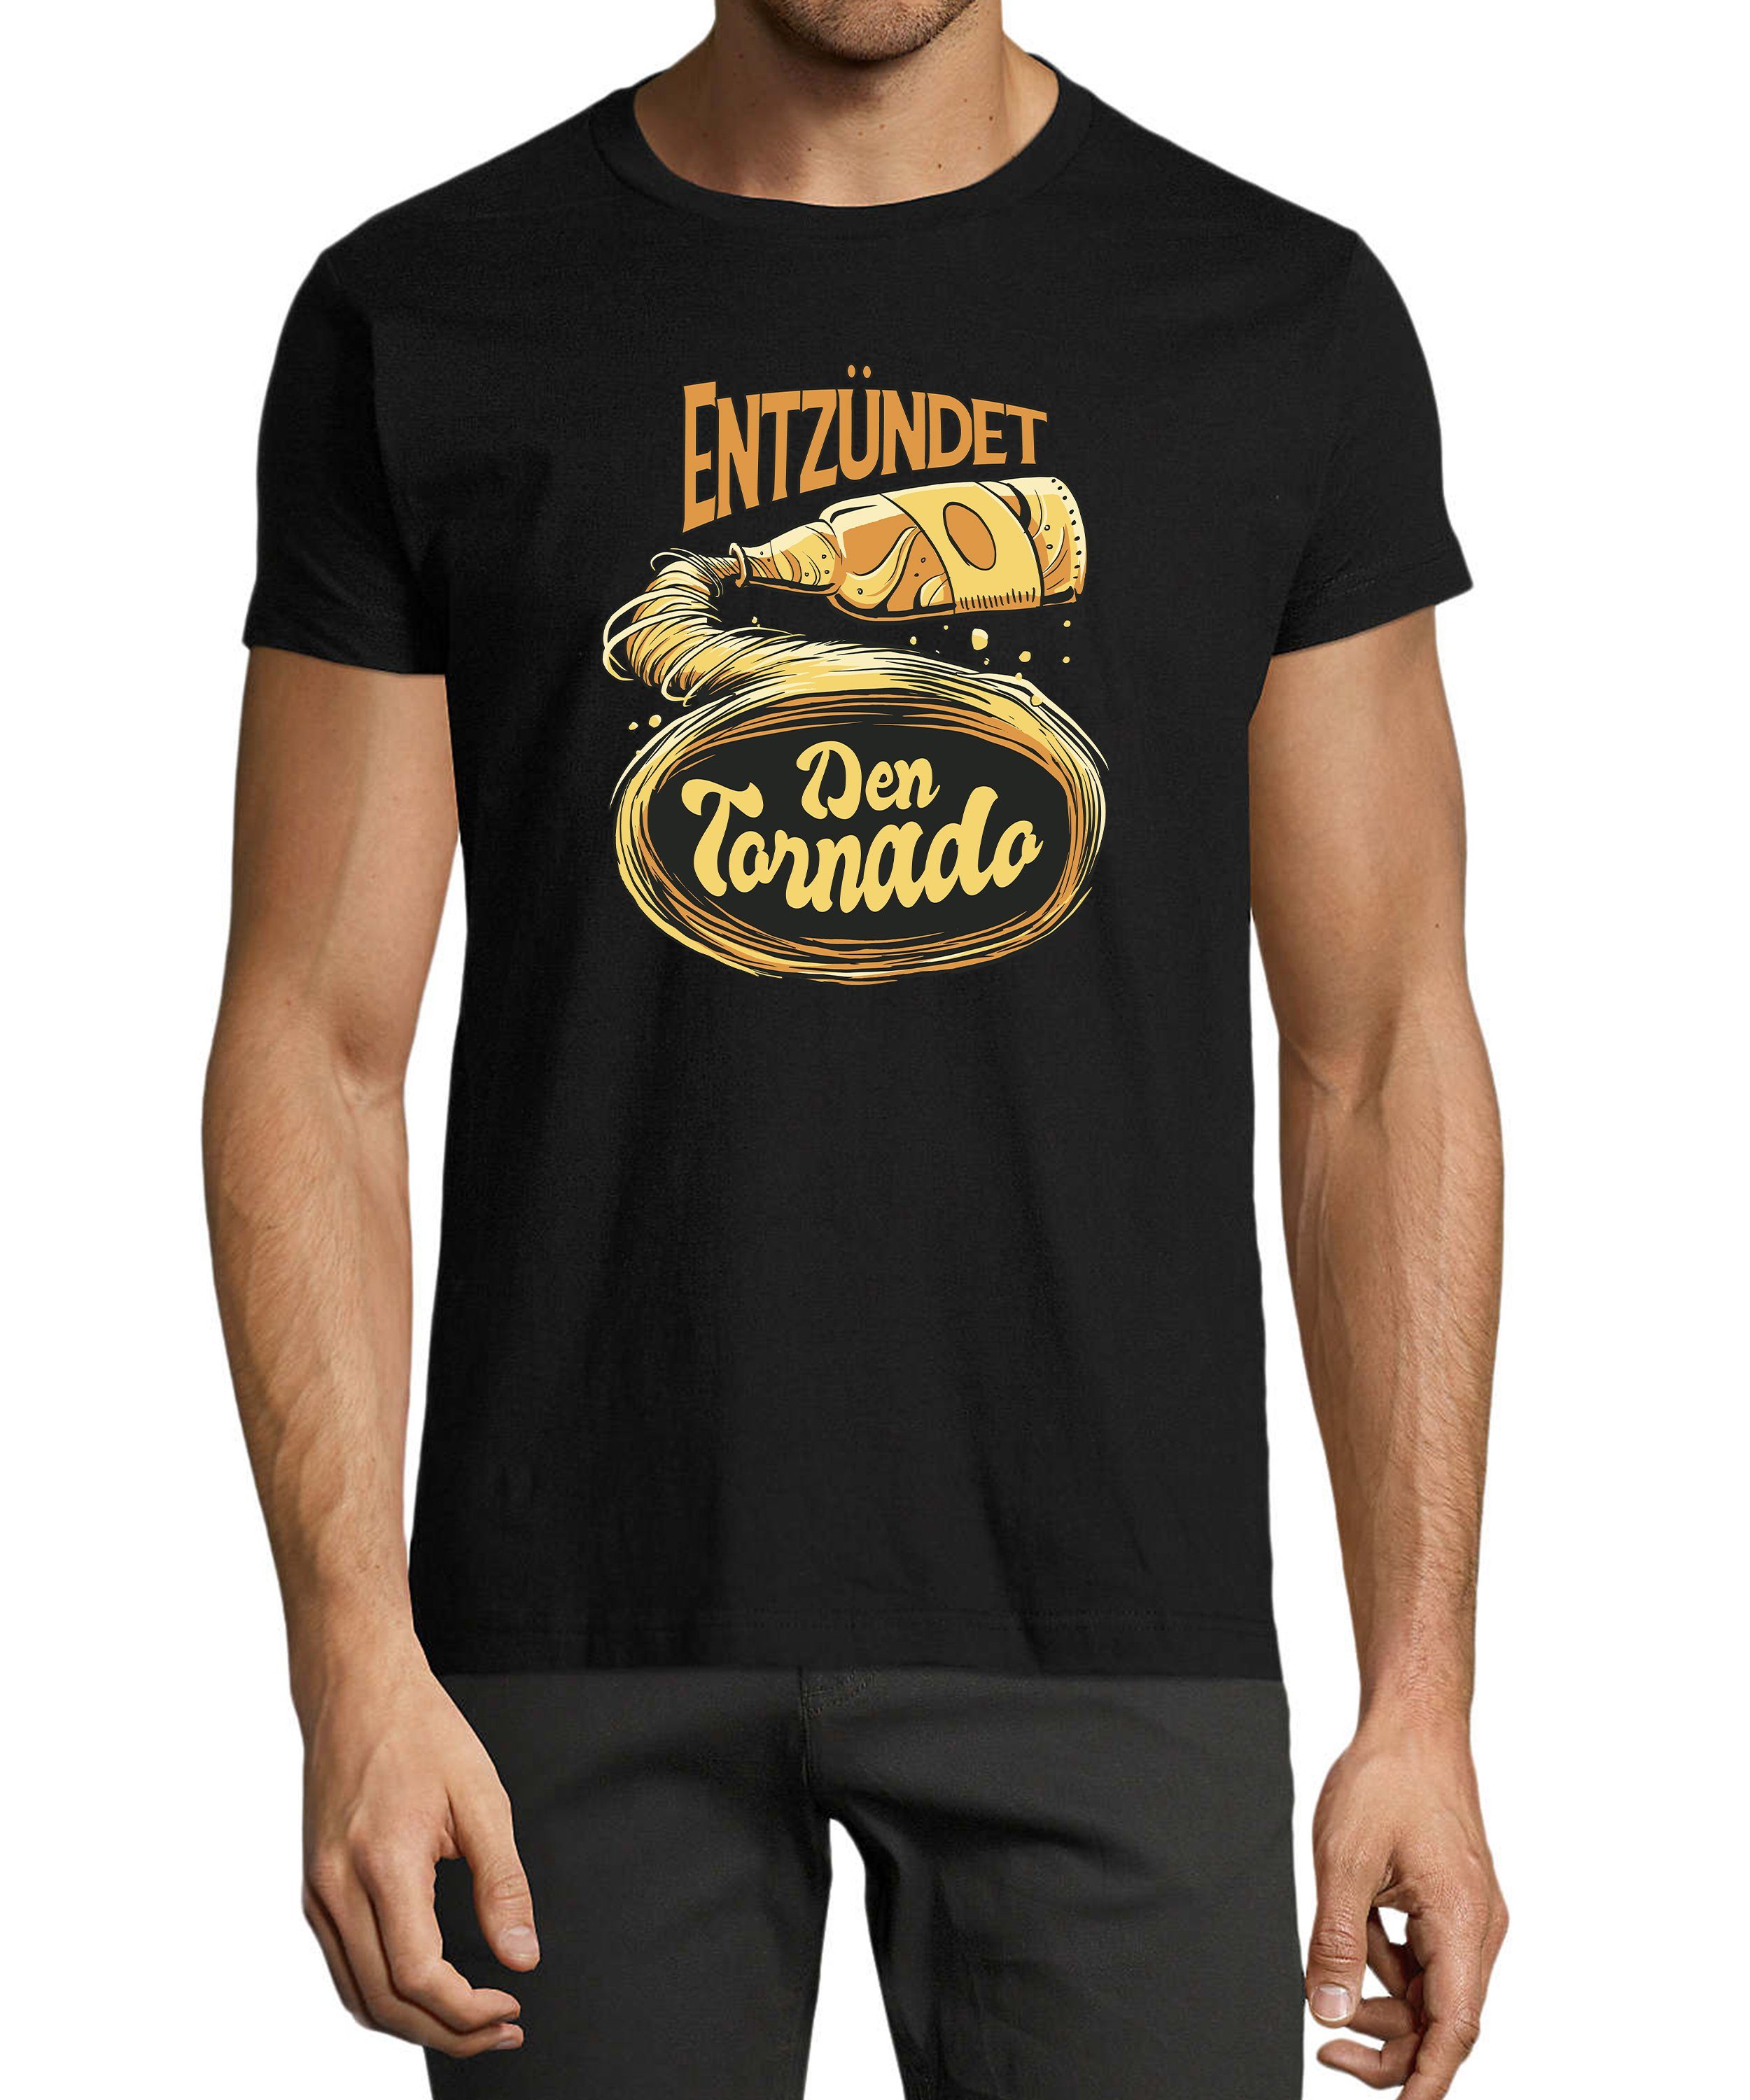 mit Trinkshirt Entzündet Herren Regular i302 Tornado Fit, den Aufdruck - Print Baumwollshirt Shirt schwarz Oktoberfest T-Shirt MyDesign24 Fun